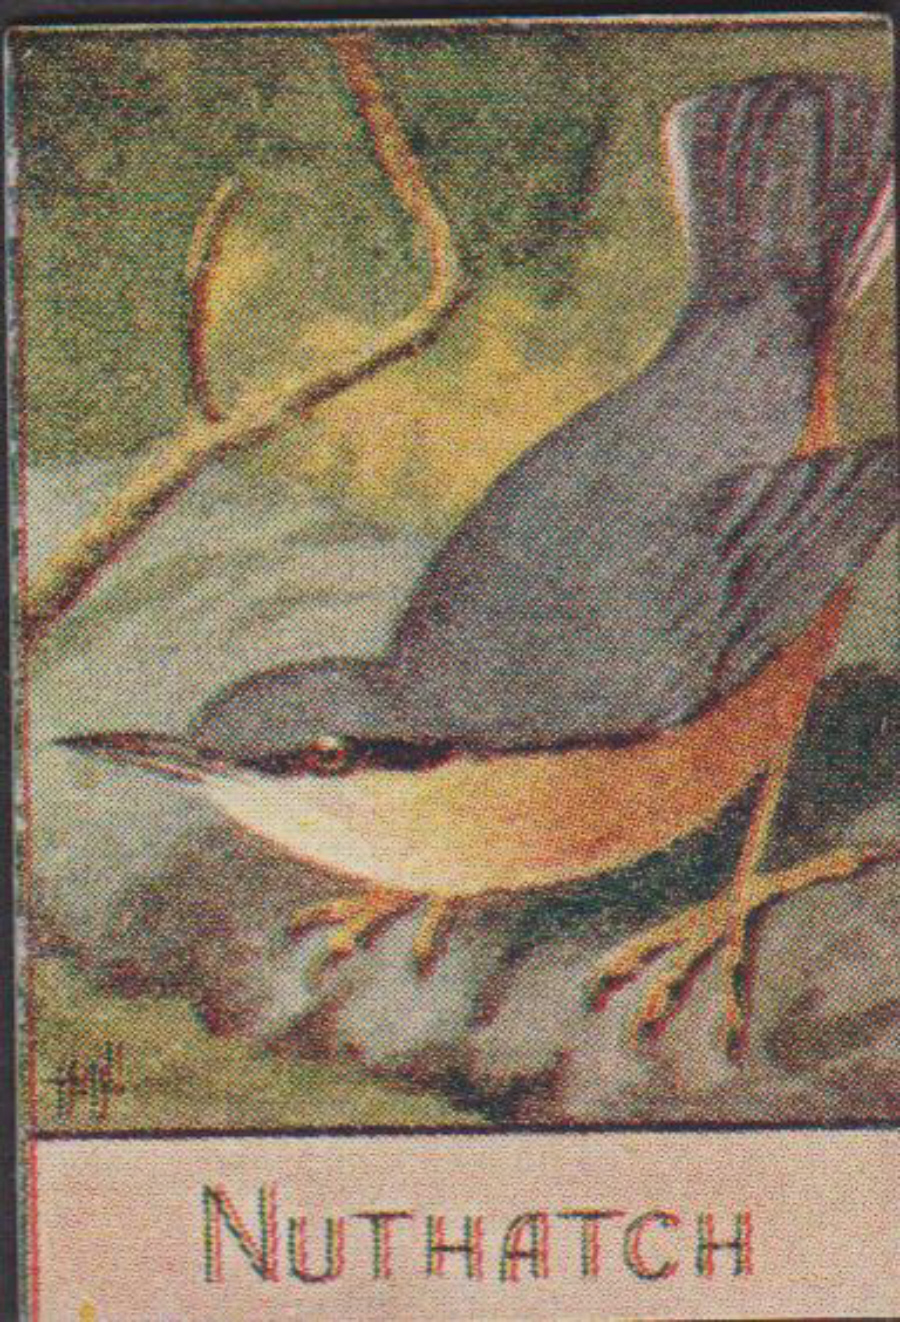 Spratt's British Bird Series Numbered No 90 Nuthatch